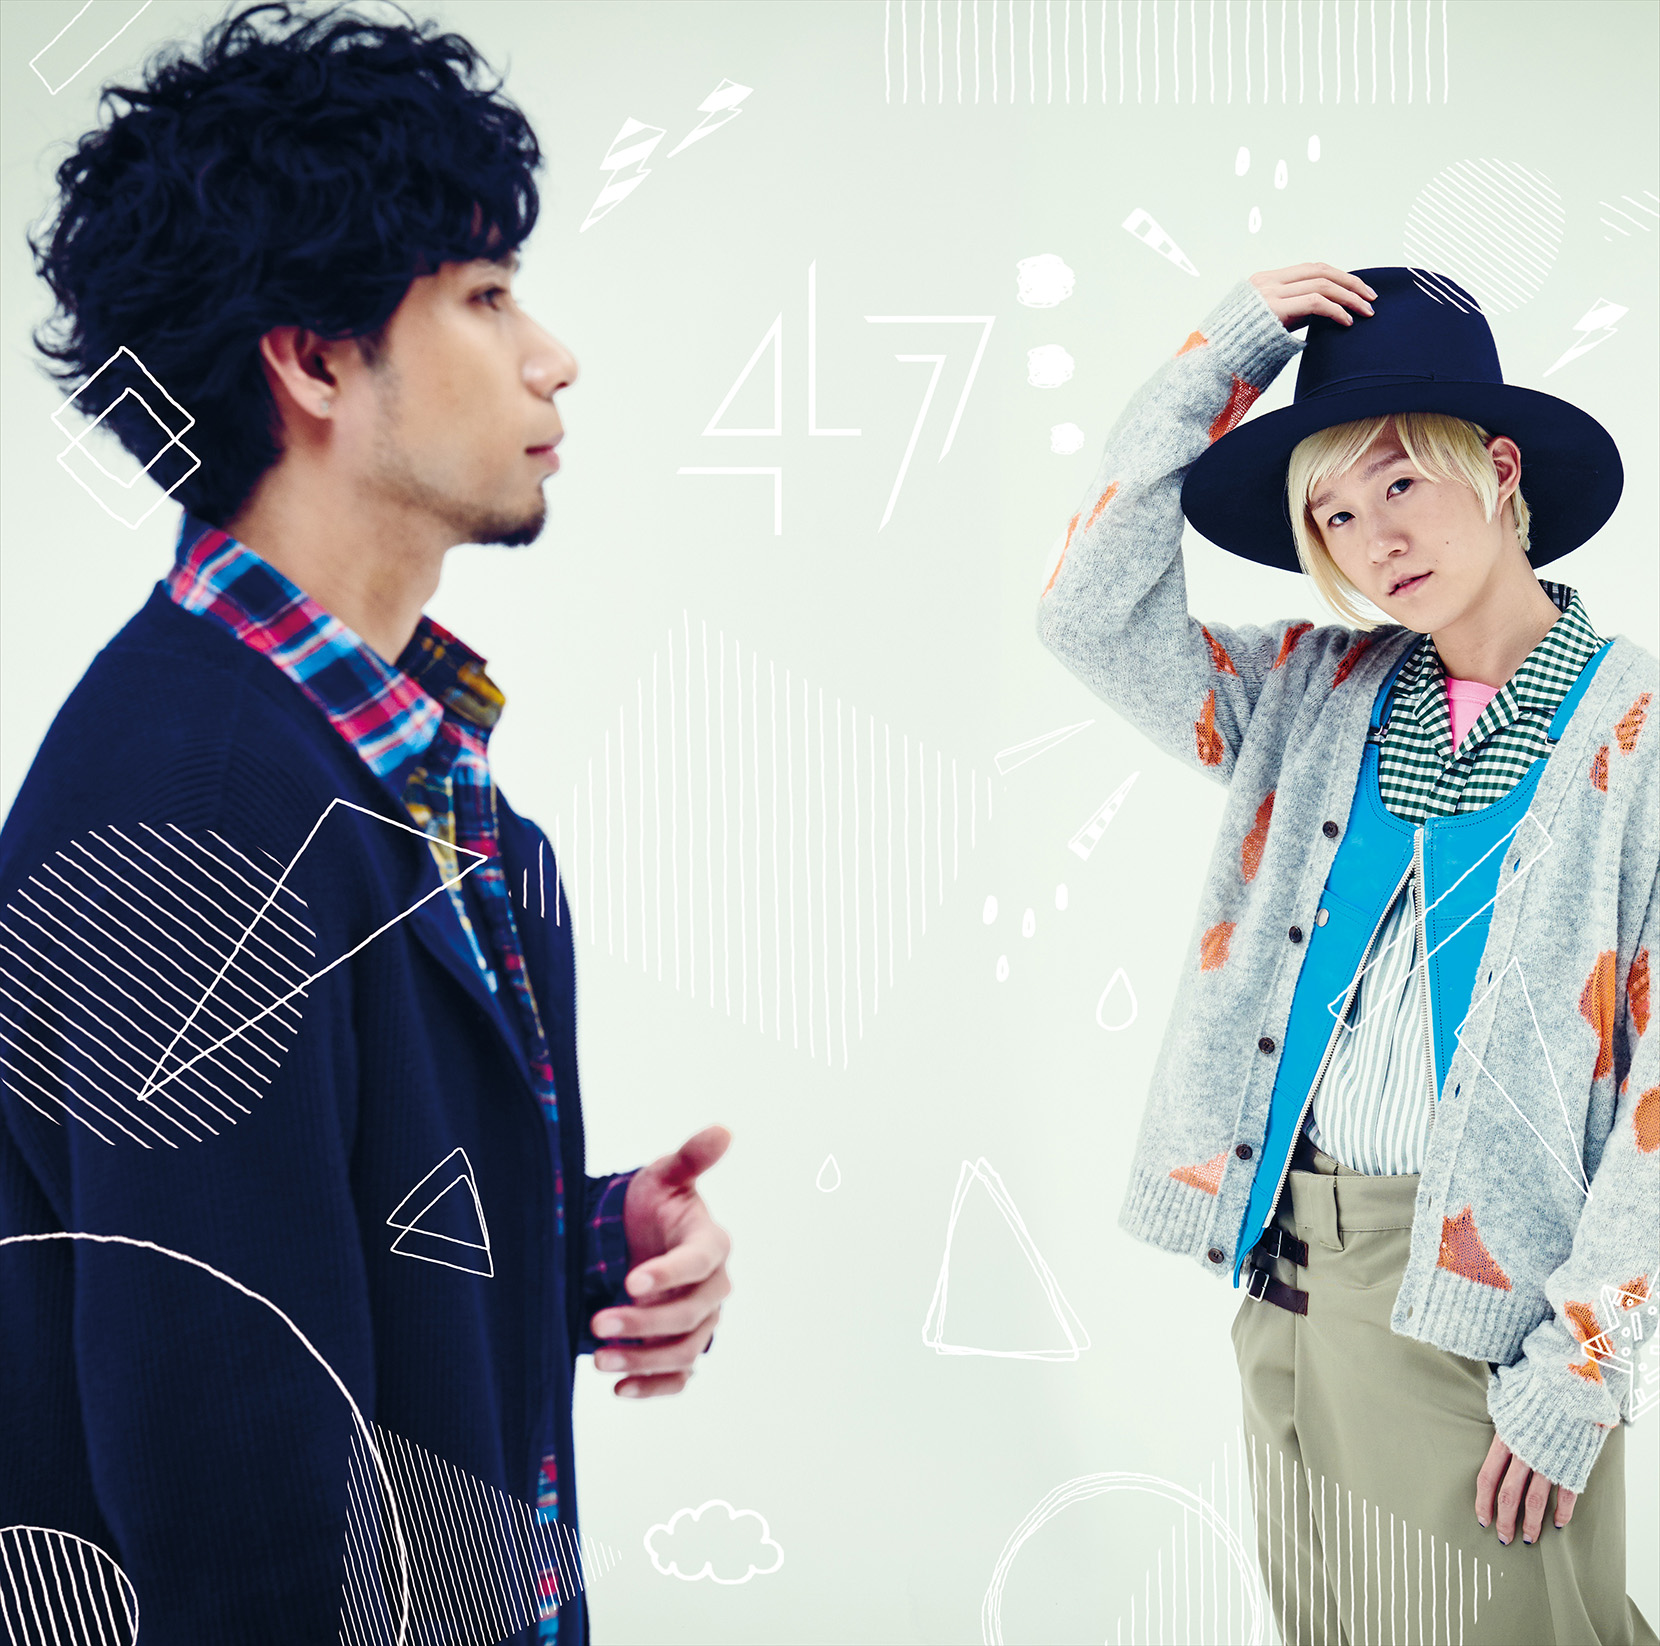 吉田山田 4th Full Album『47【ヨンナナ】』 | ガクシンFind